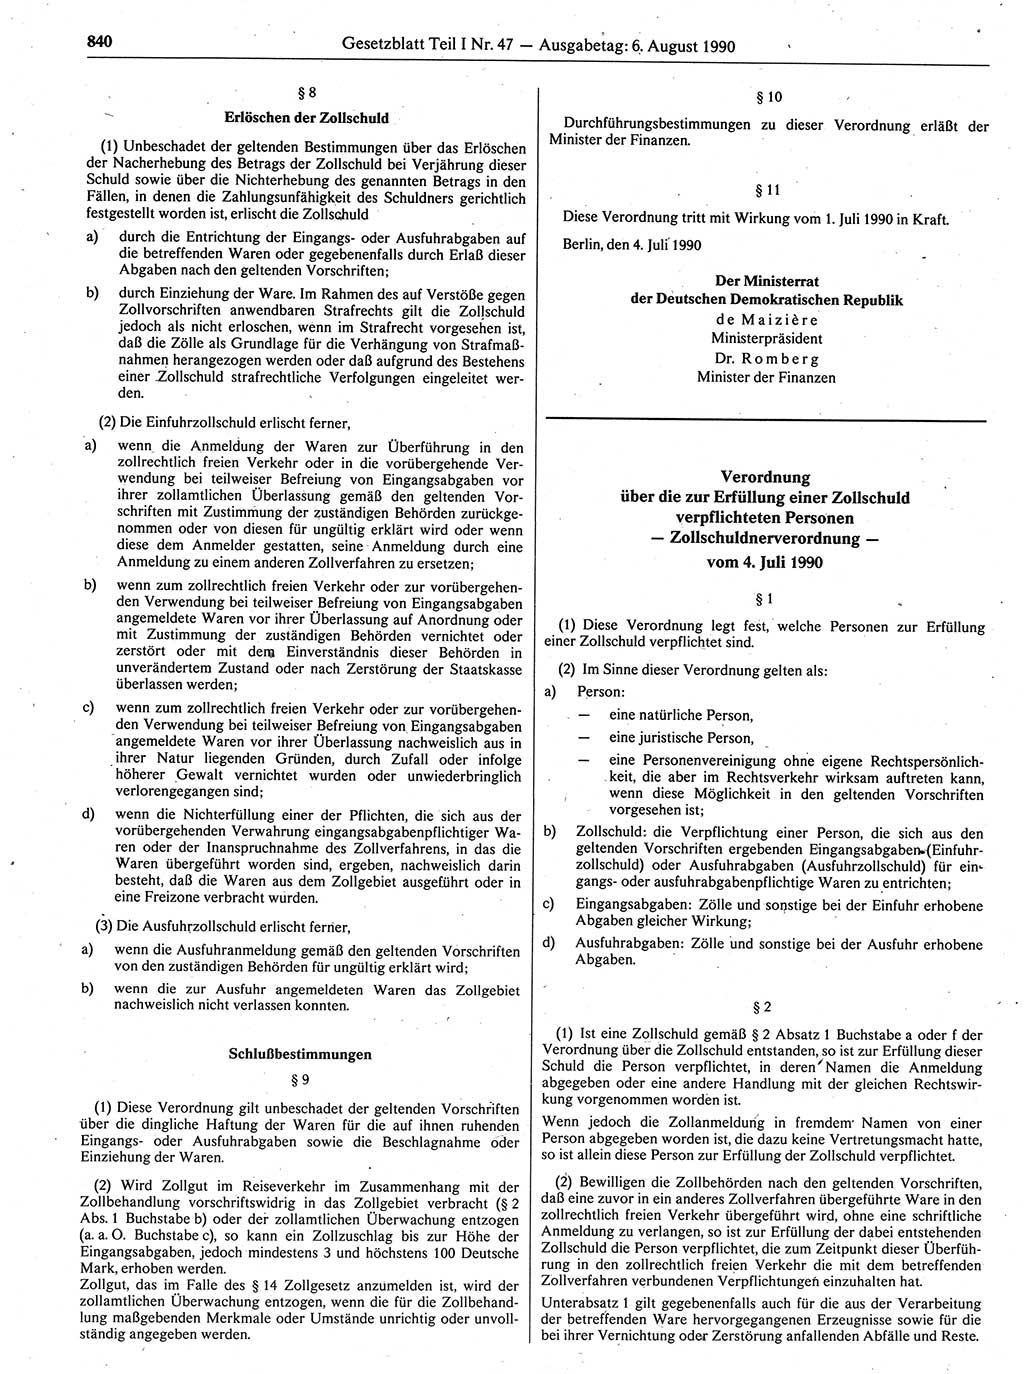 Gesetzblatt (GBl.) der Deutschen Demokratischen Republik (DDR) Teil Ⅰ 1990, Seite 840 (GBl. DDR Ⅰ 1990, S. 840)